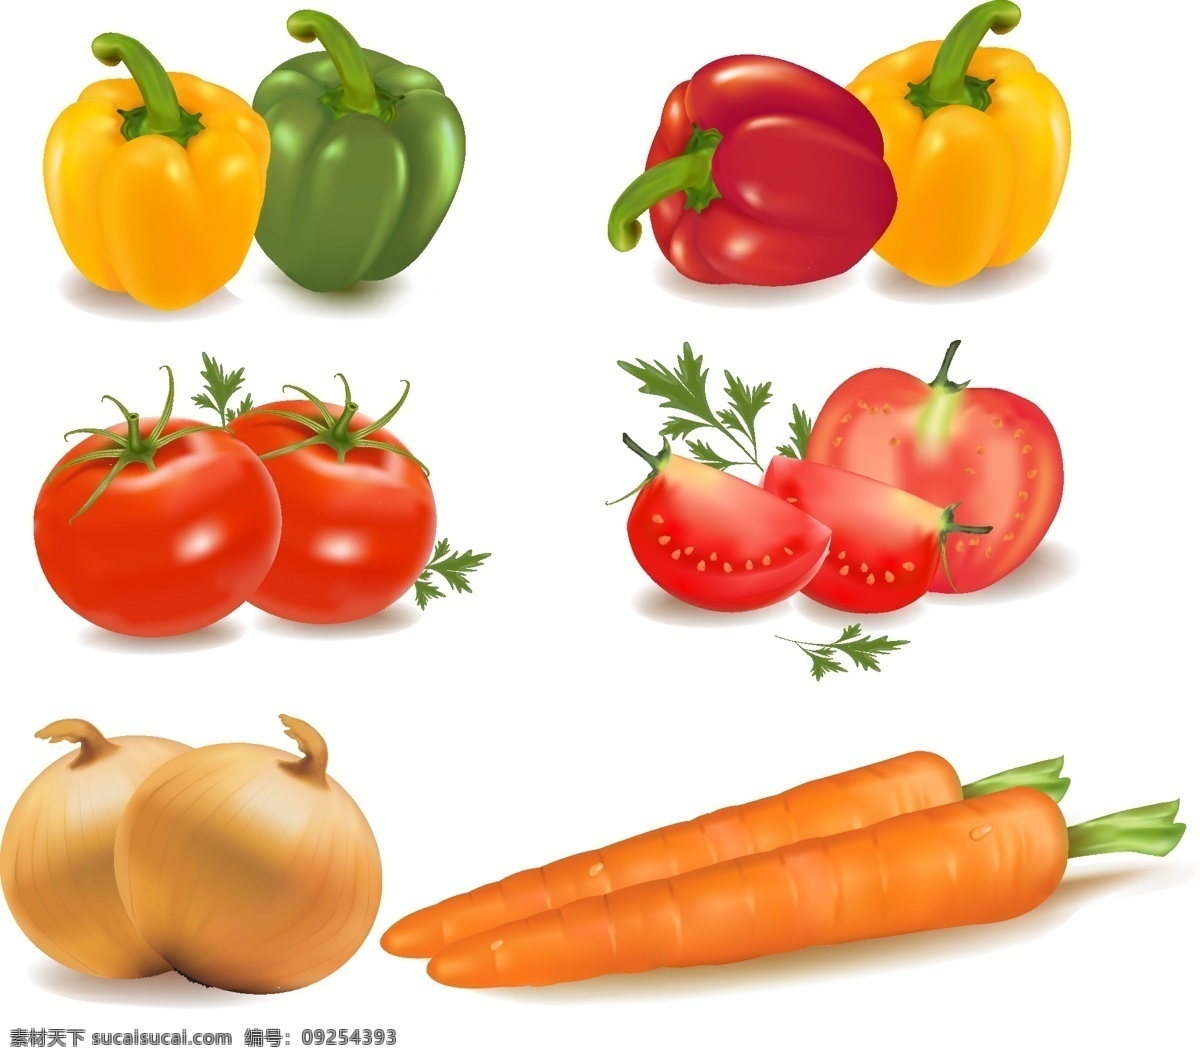 蔬菜矢量图 蔬菜 青椒 胡萝卜 洋葱 萝卜 红萝卜 灯笼椒 红椒 辣椒 西红柿 矢量 矢量图 矢量素材 其他矢量 水果 食物